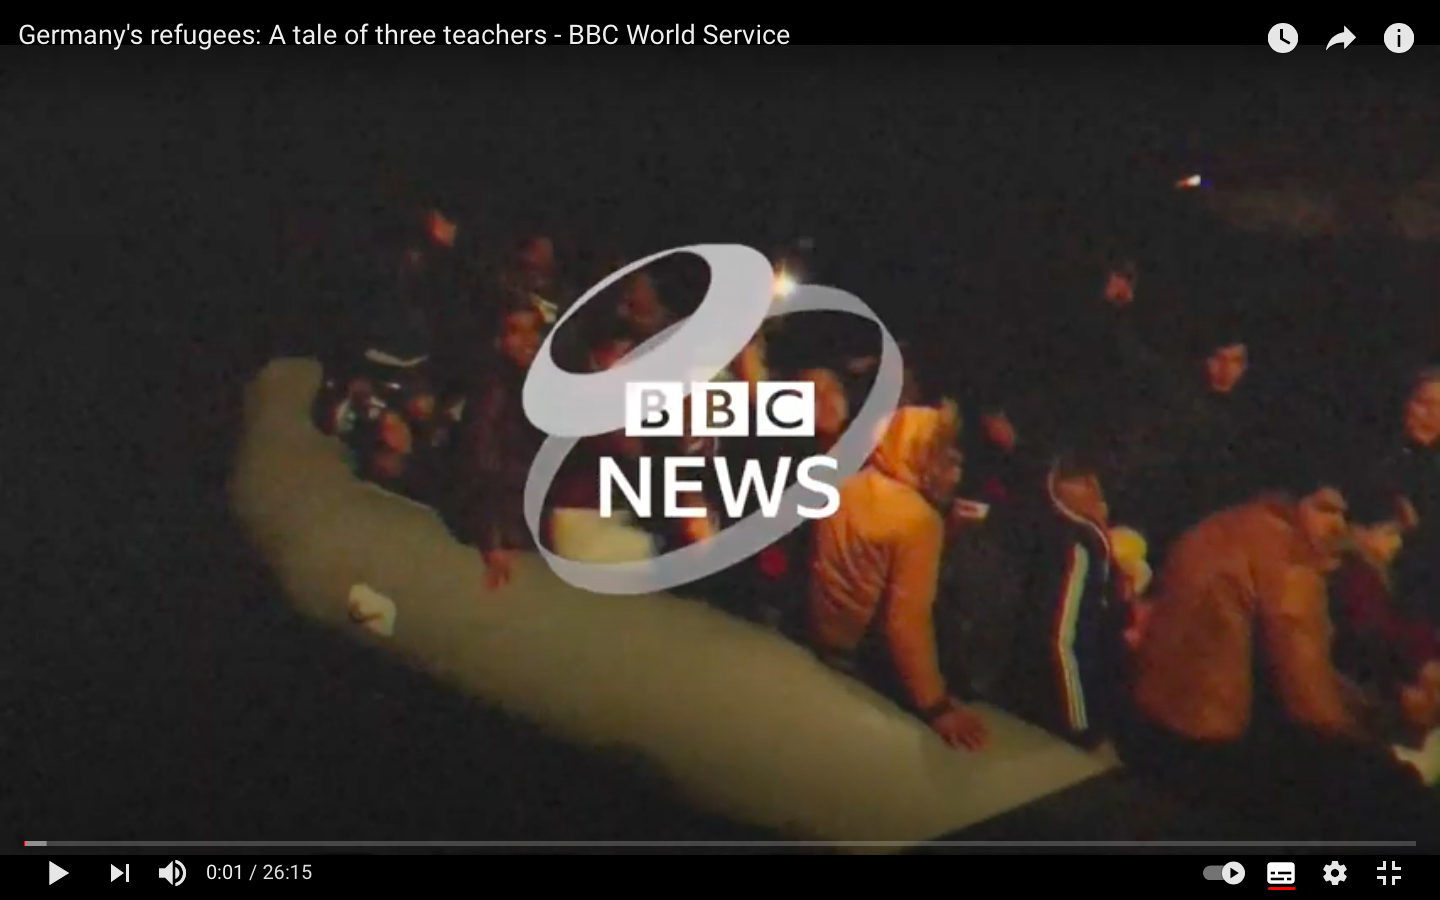 Startbild zum BBC-Film über Lehrkräfte Plus Bochum